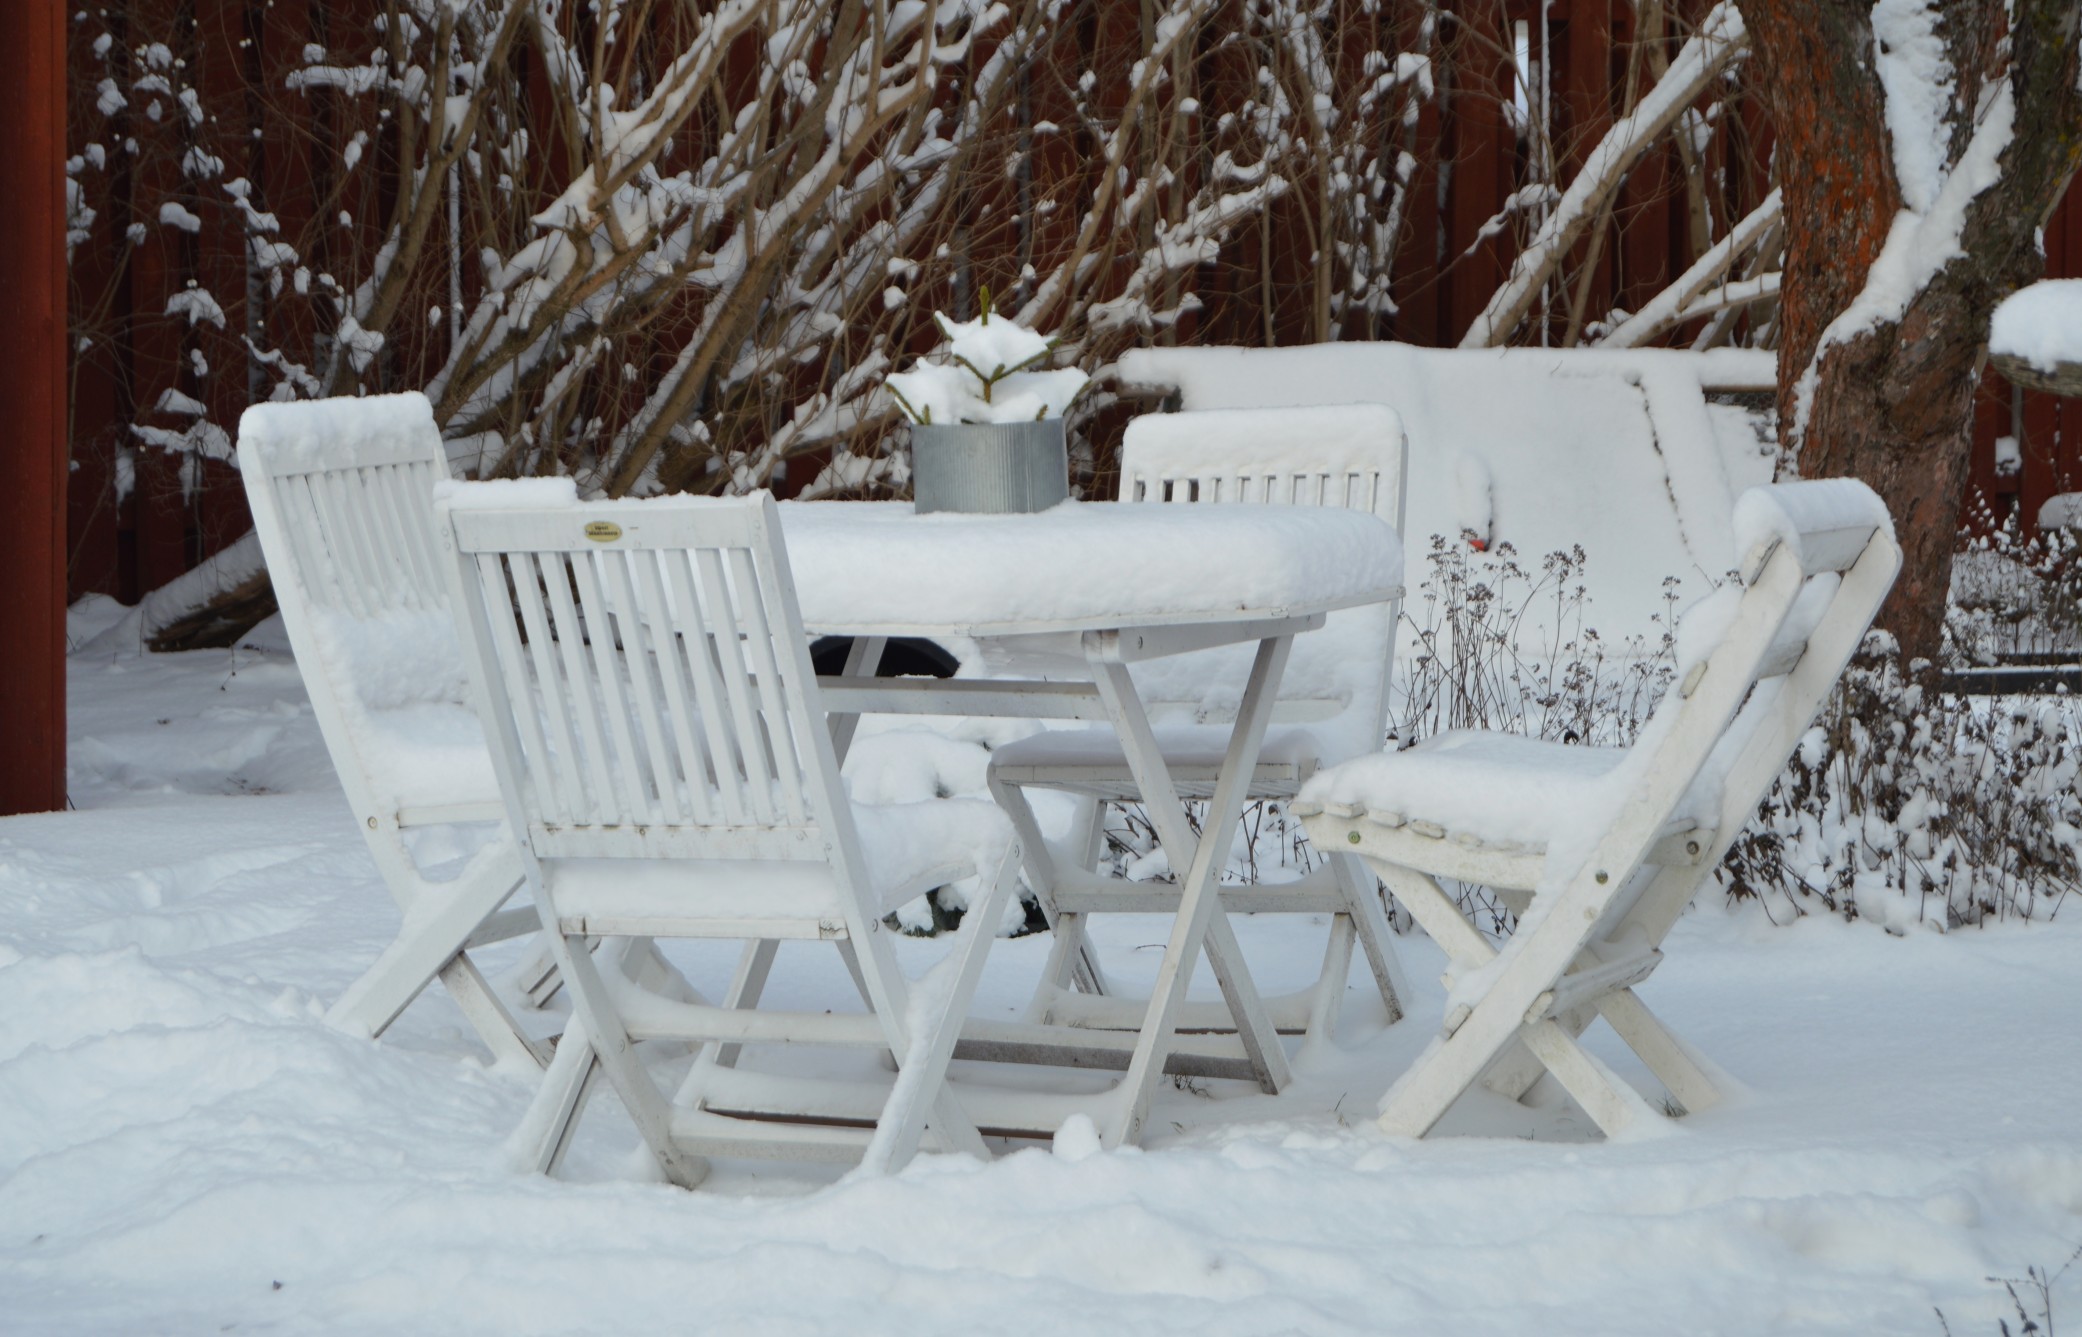 Vor dem ersten Frost gilt es, den Garten mit Gartenmöbeln und Pflanzen winterfest zu machen. Foto: Jr.Md via Twenty